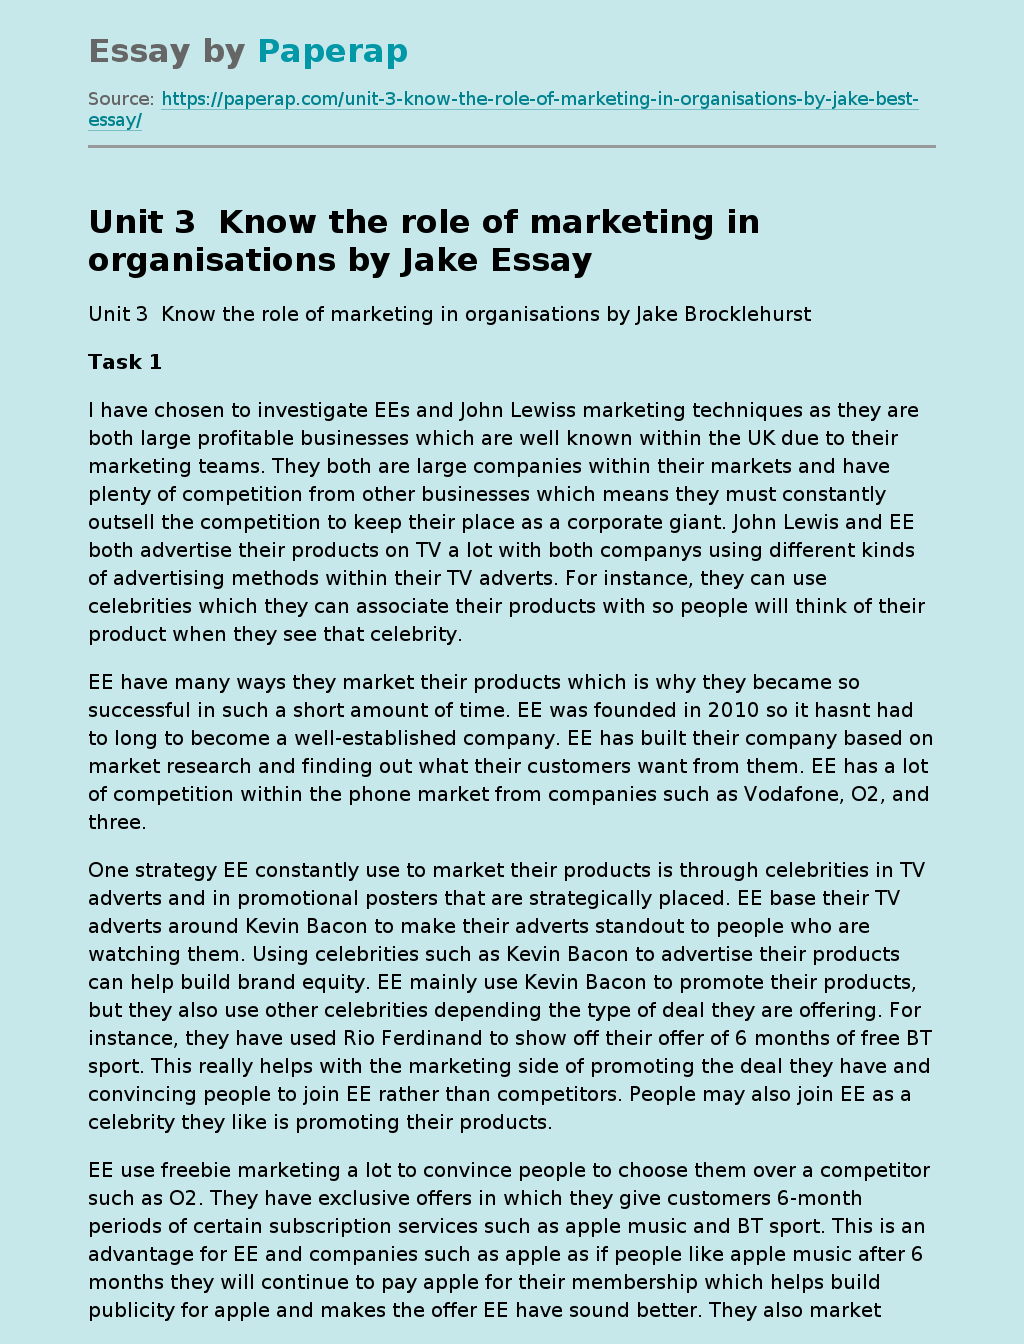 Unit 3  Know the role of marketing in organisations by Jake